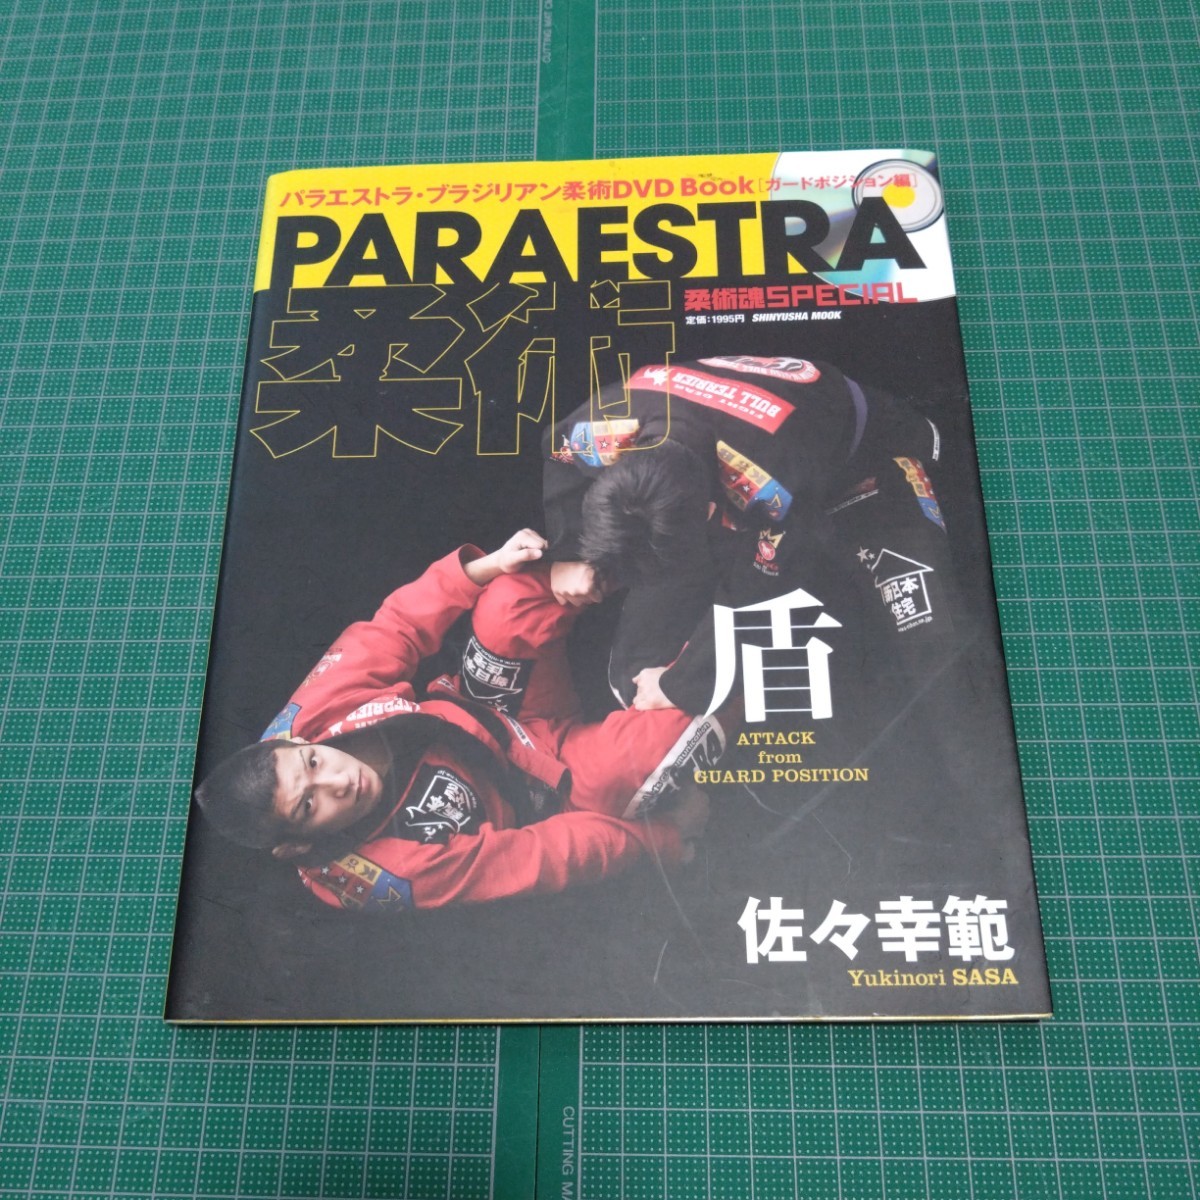 Paraestra柔術・盾 : パラエストラ・ブラジリアン柔術DVD book ガードポジション編